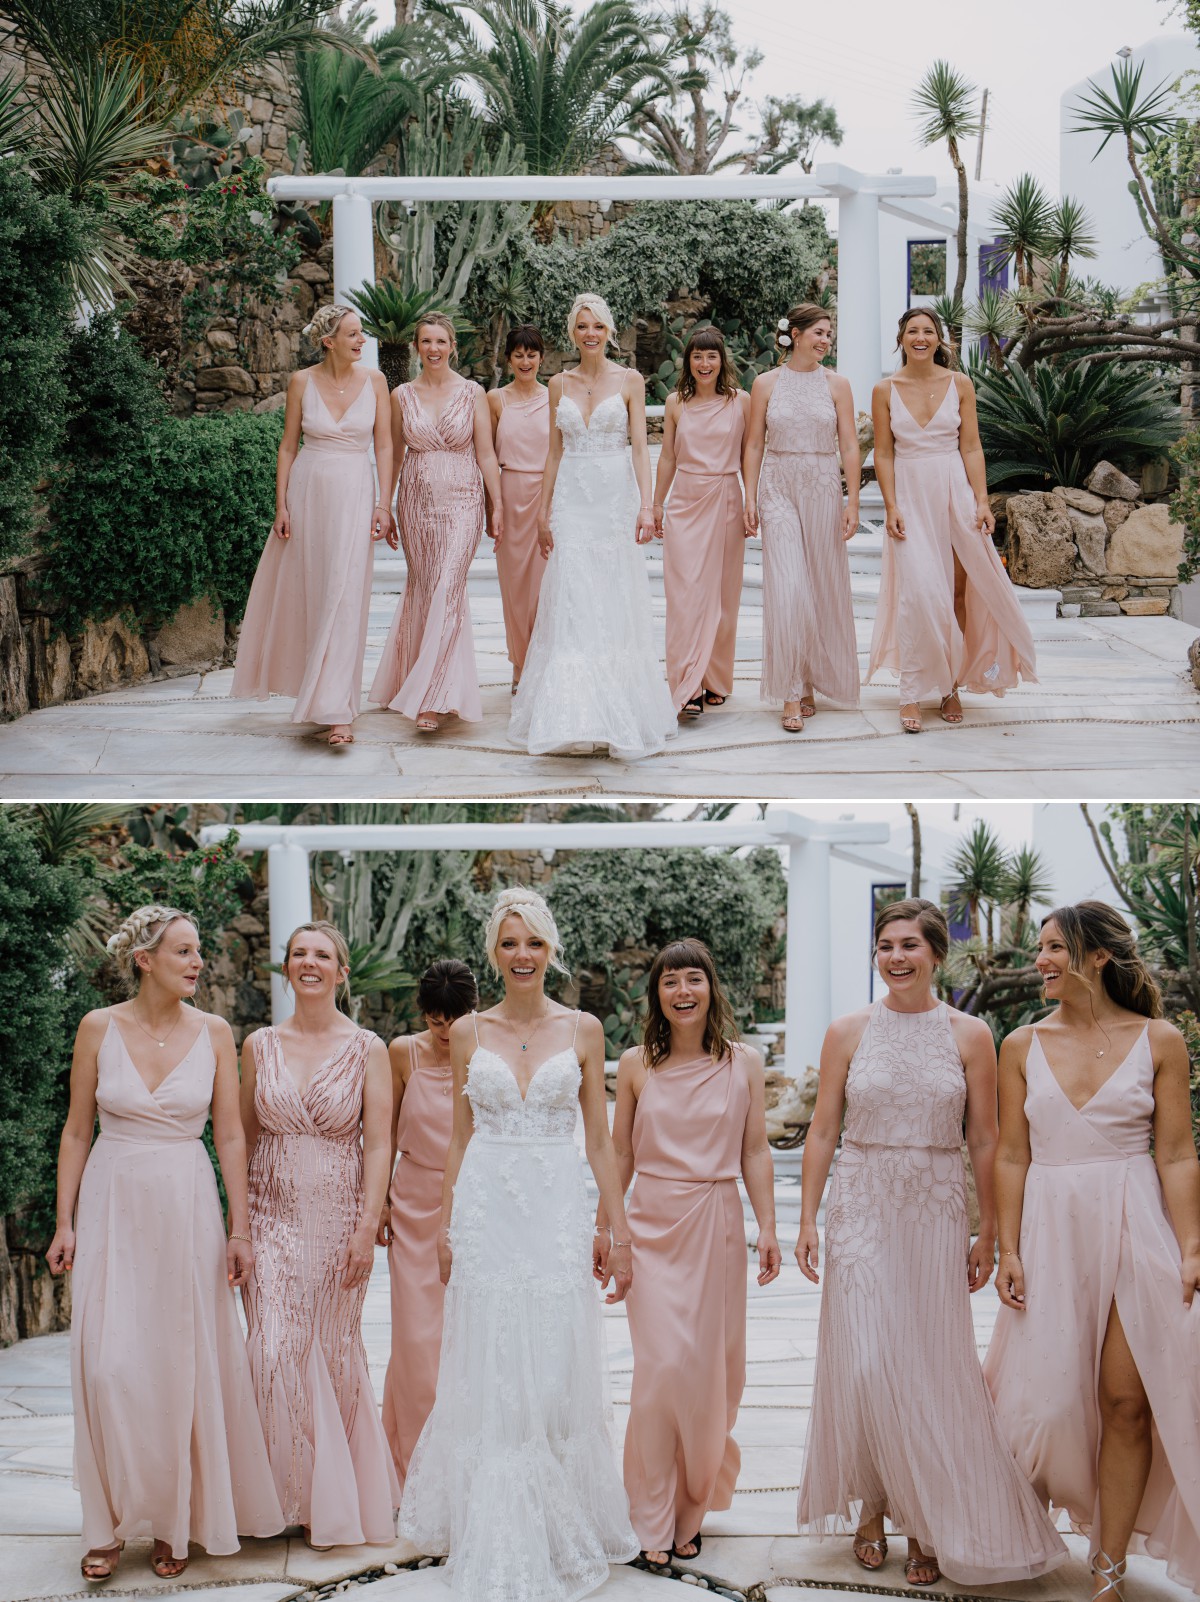 Bride with bridesmaids walk in Greece wedding